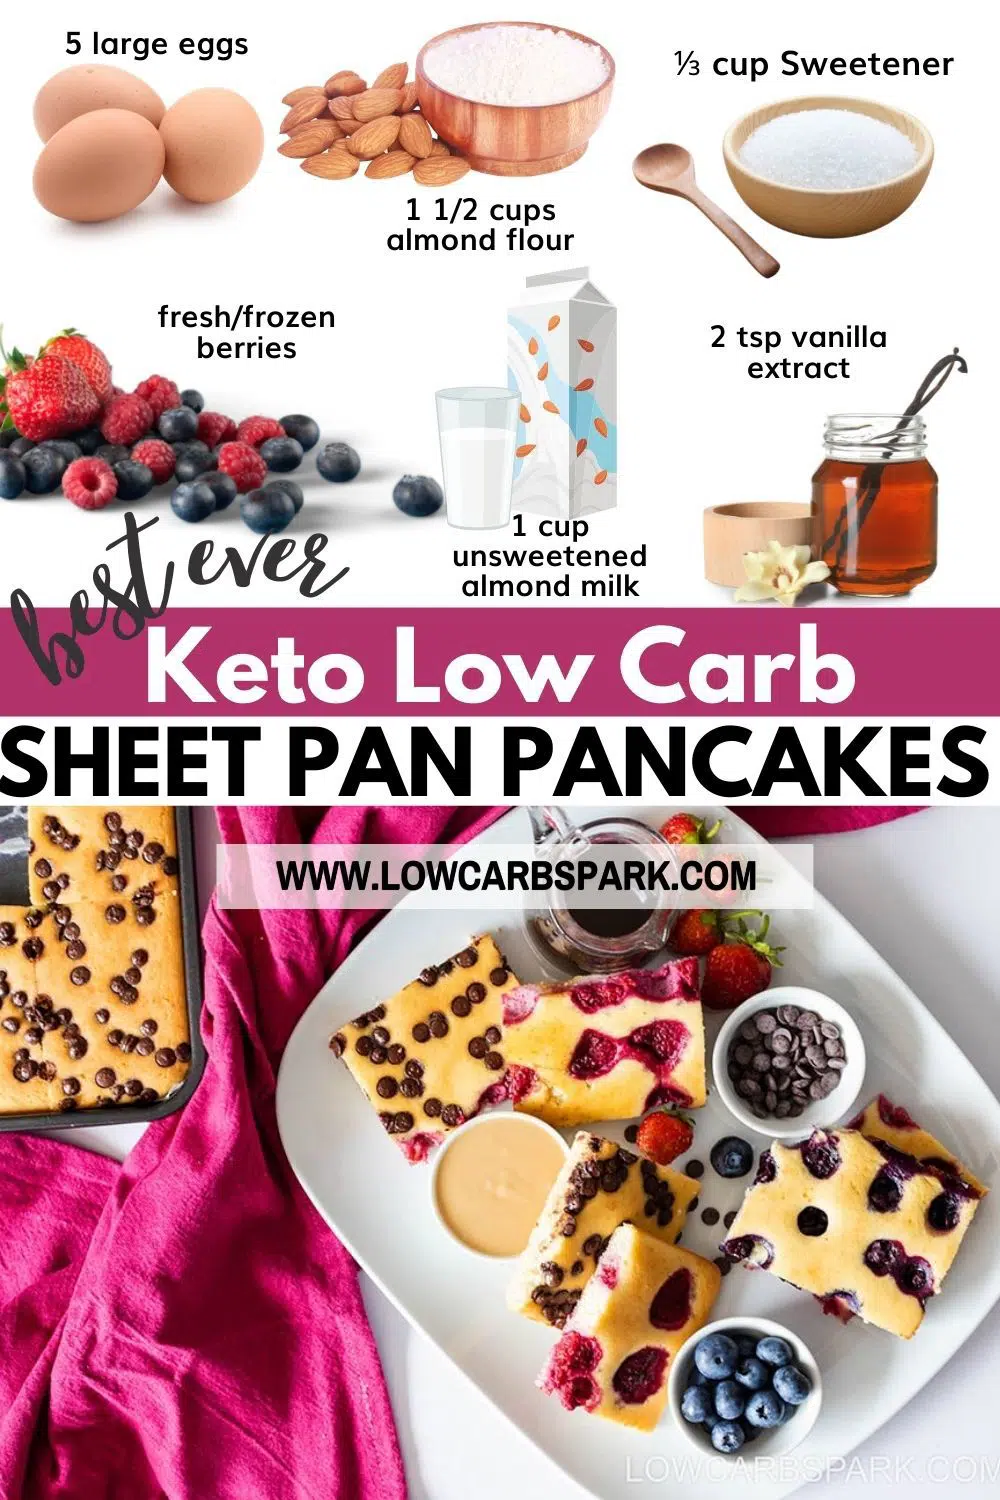 Keto Sheet Pan Pancakes